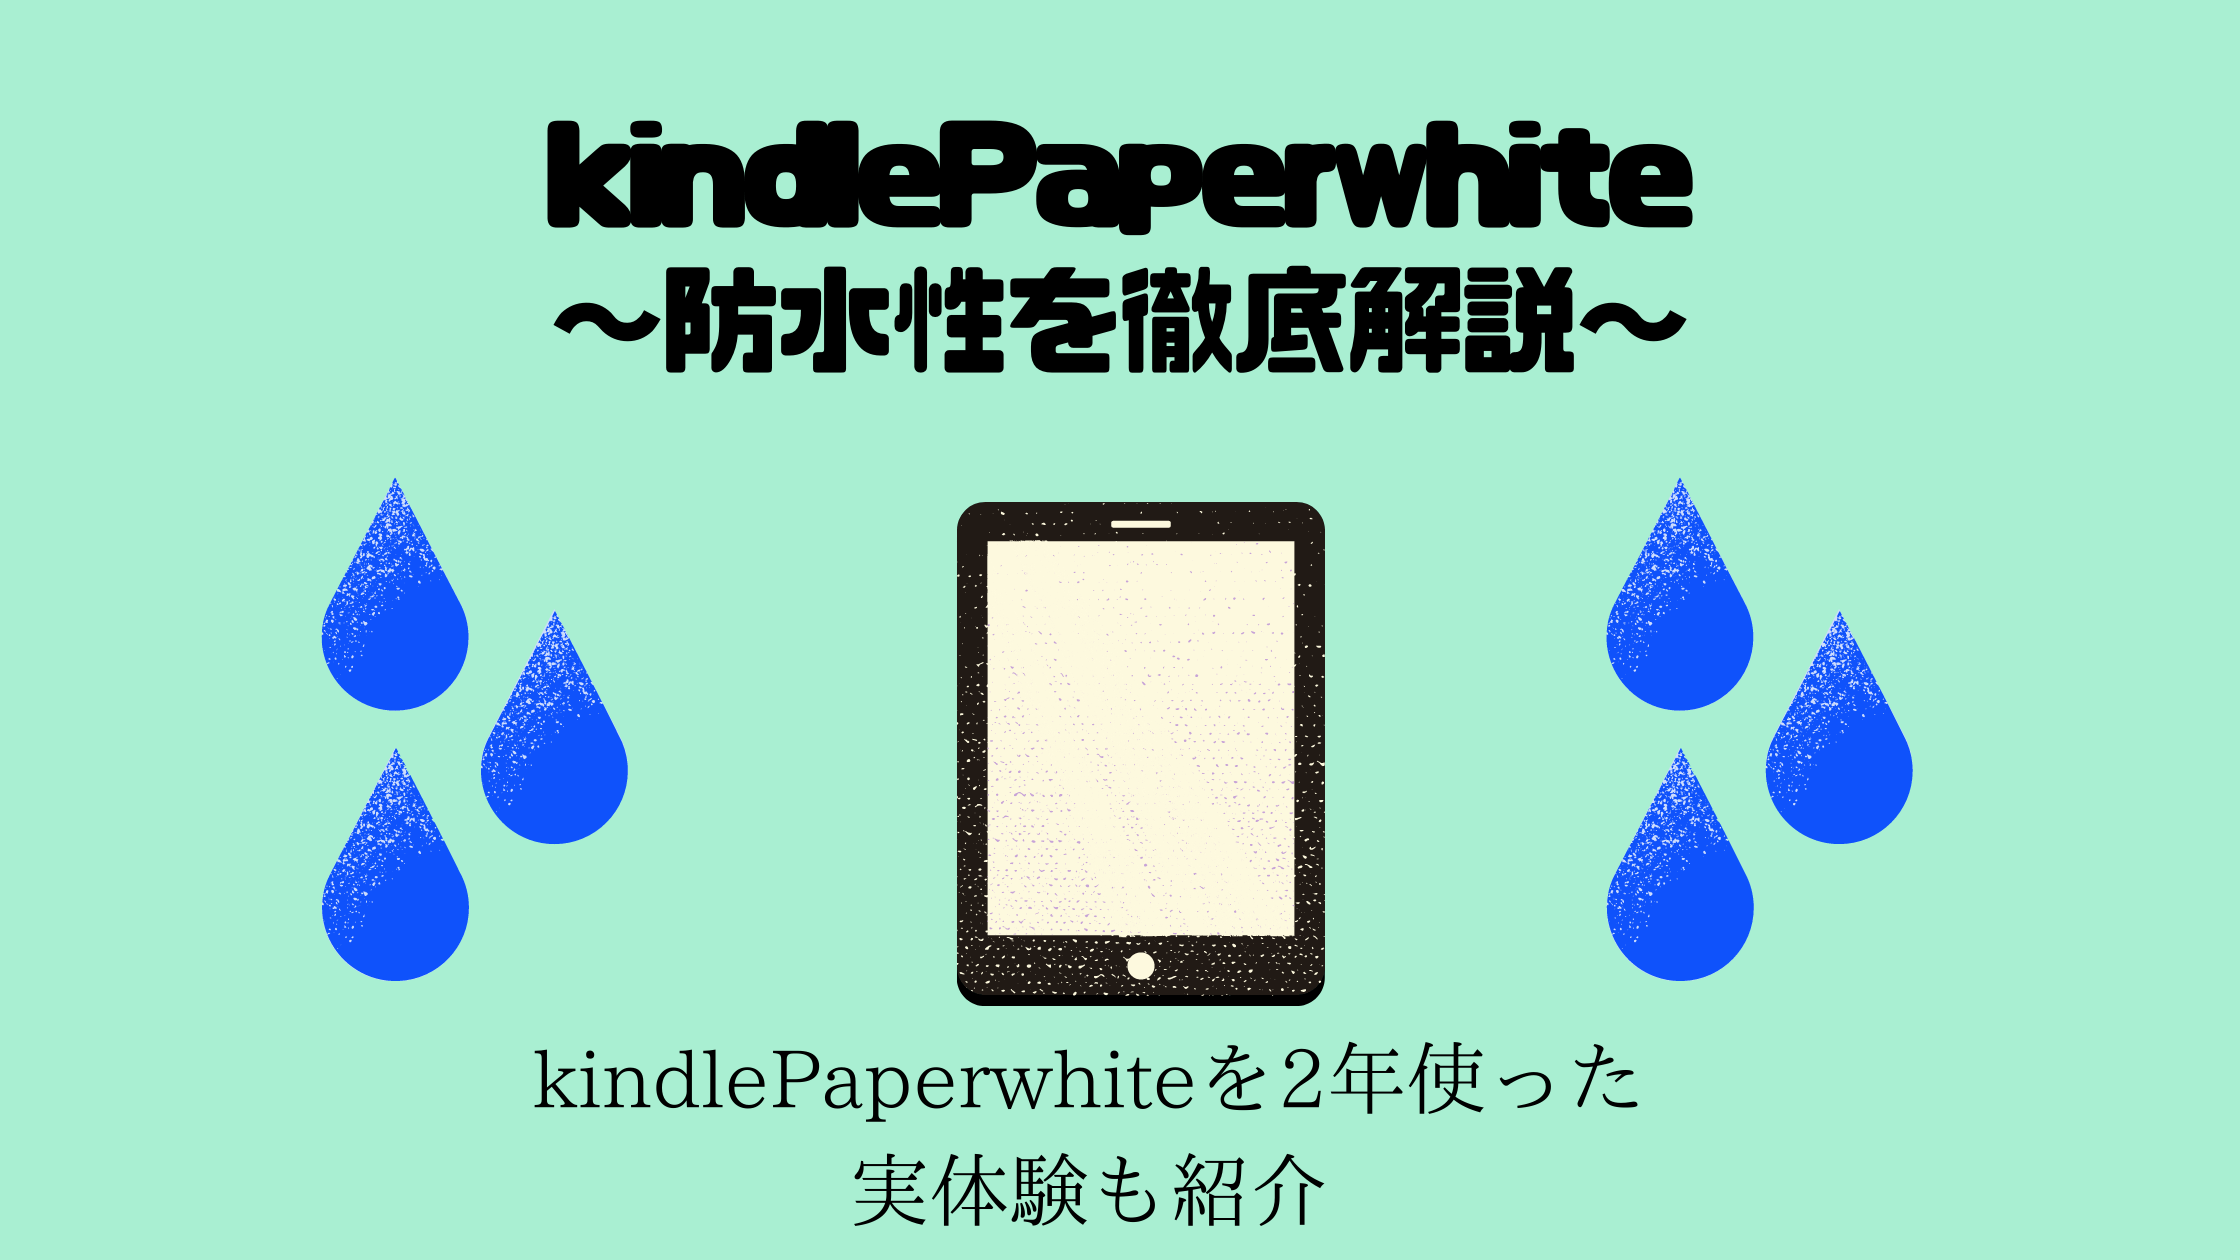 防水機能あるkindle paperwhiteはお風呂読書に最適